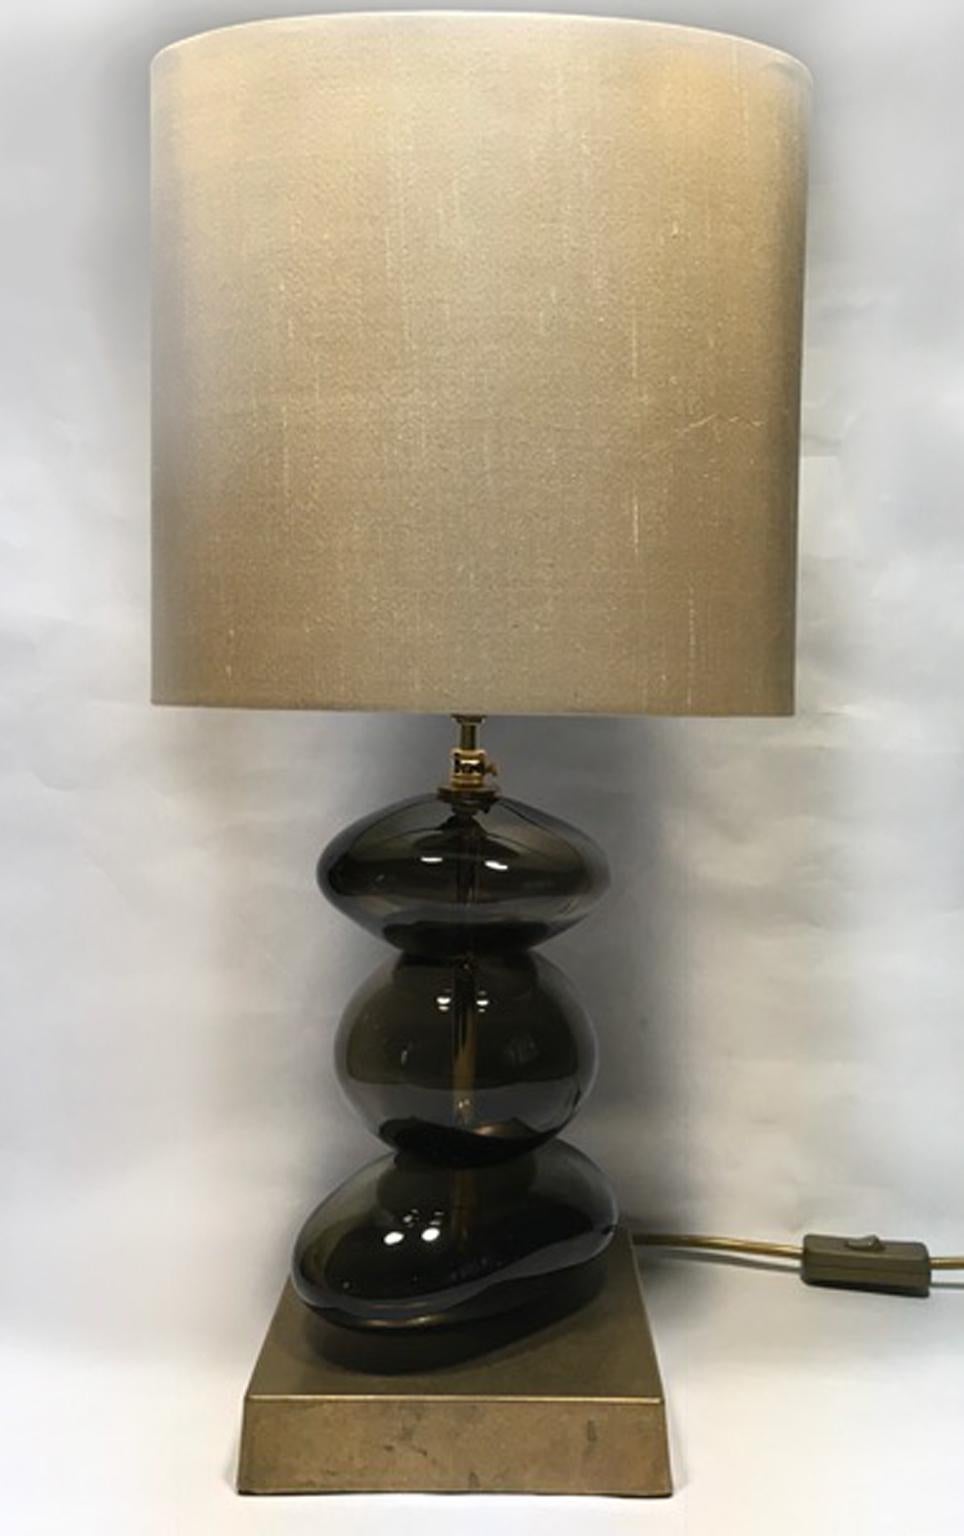 Il s'agit d'une paire de lampes de table en verre soufflé de couleur bronze avec des abat-jour en soie pure faits à la main, de production contemporaine.
C'est un bel objet qui attire le regard, une œuvre d'art pour sa présence élégante et pour la